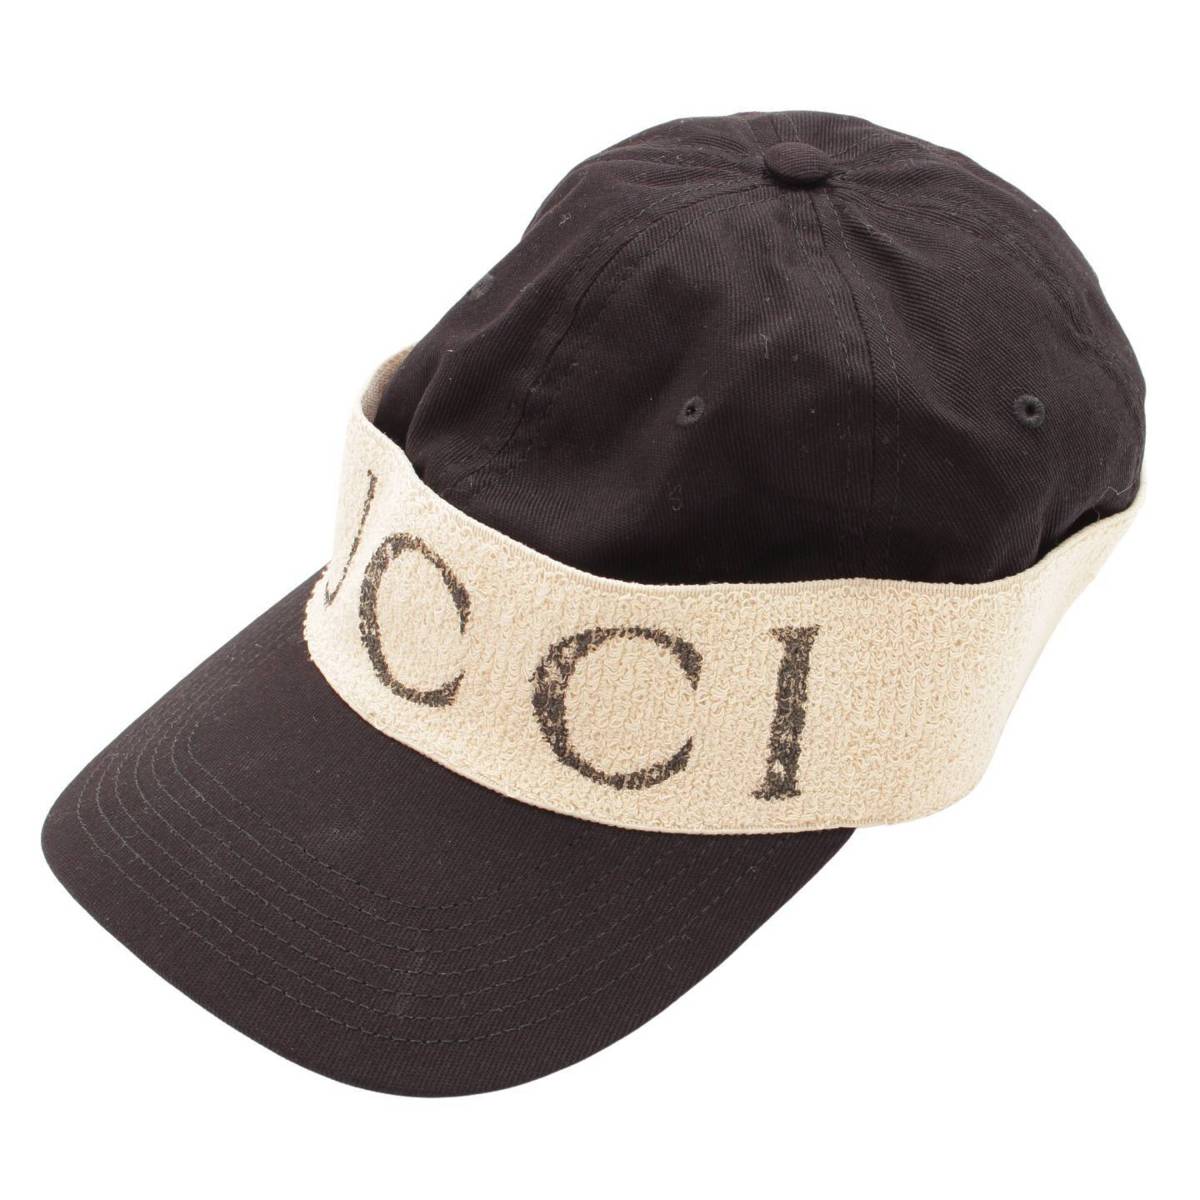 グッチ(Gucci) ヘアバンド付き ベースボール キャップ 帽子 ブラック XL 60 中古 通販 retro レトロ